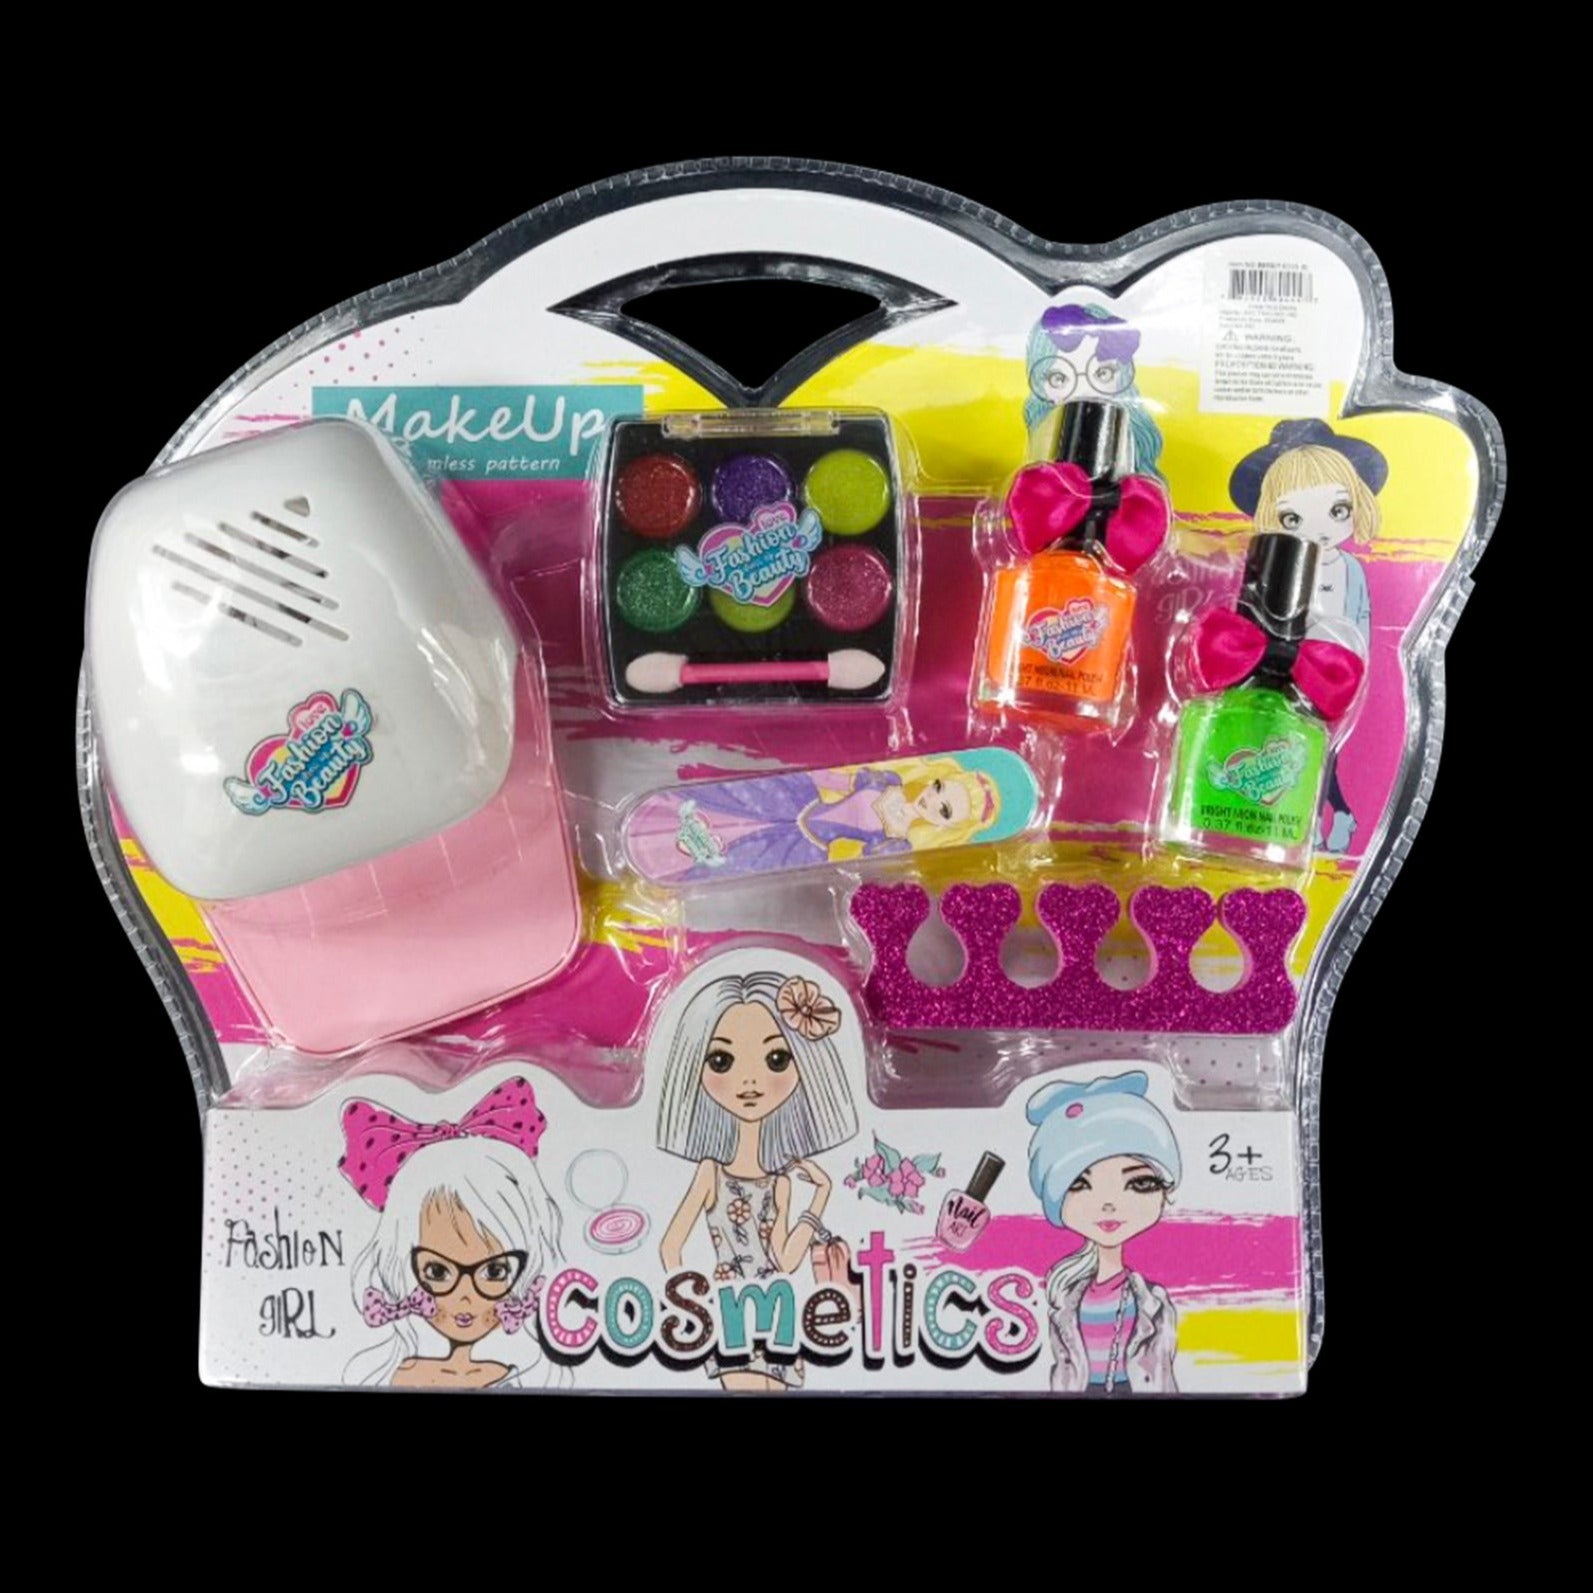 Makeup Cosmetics Toy Play set